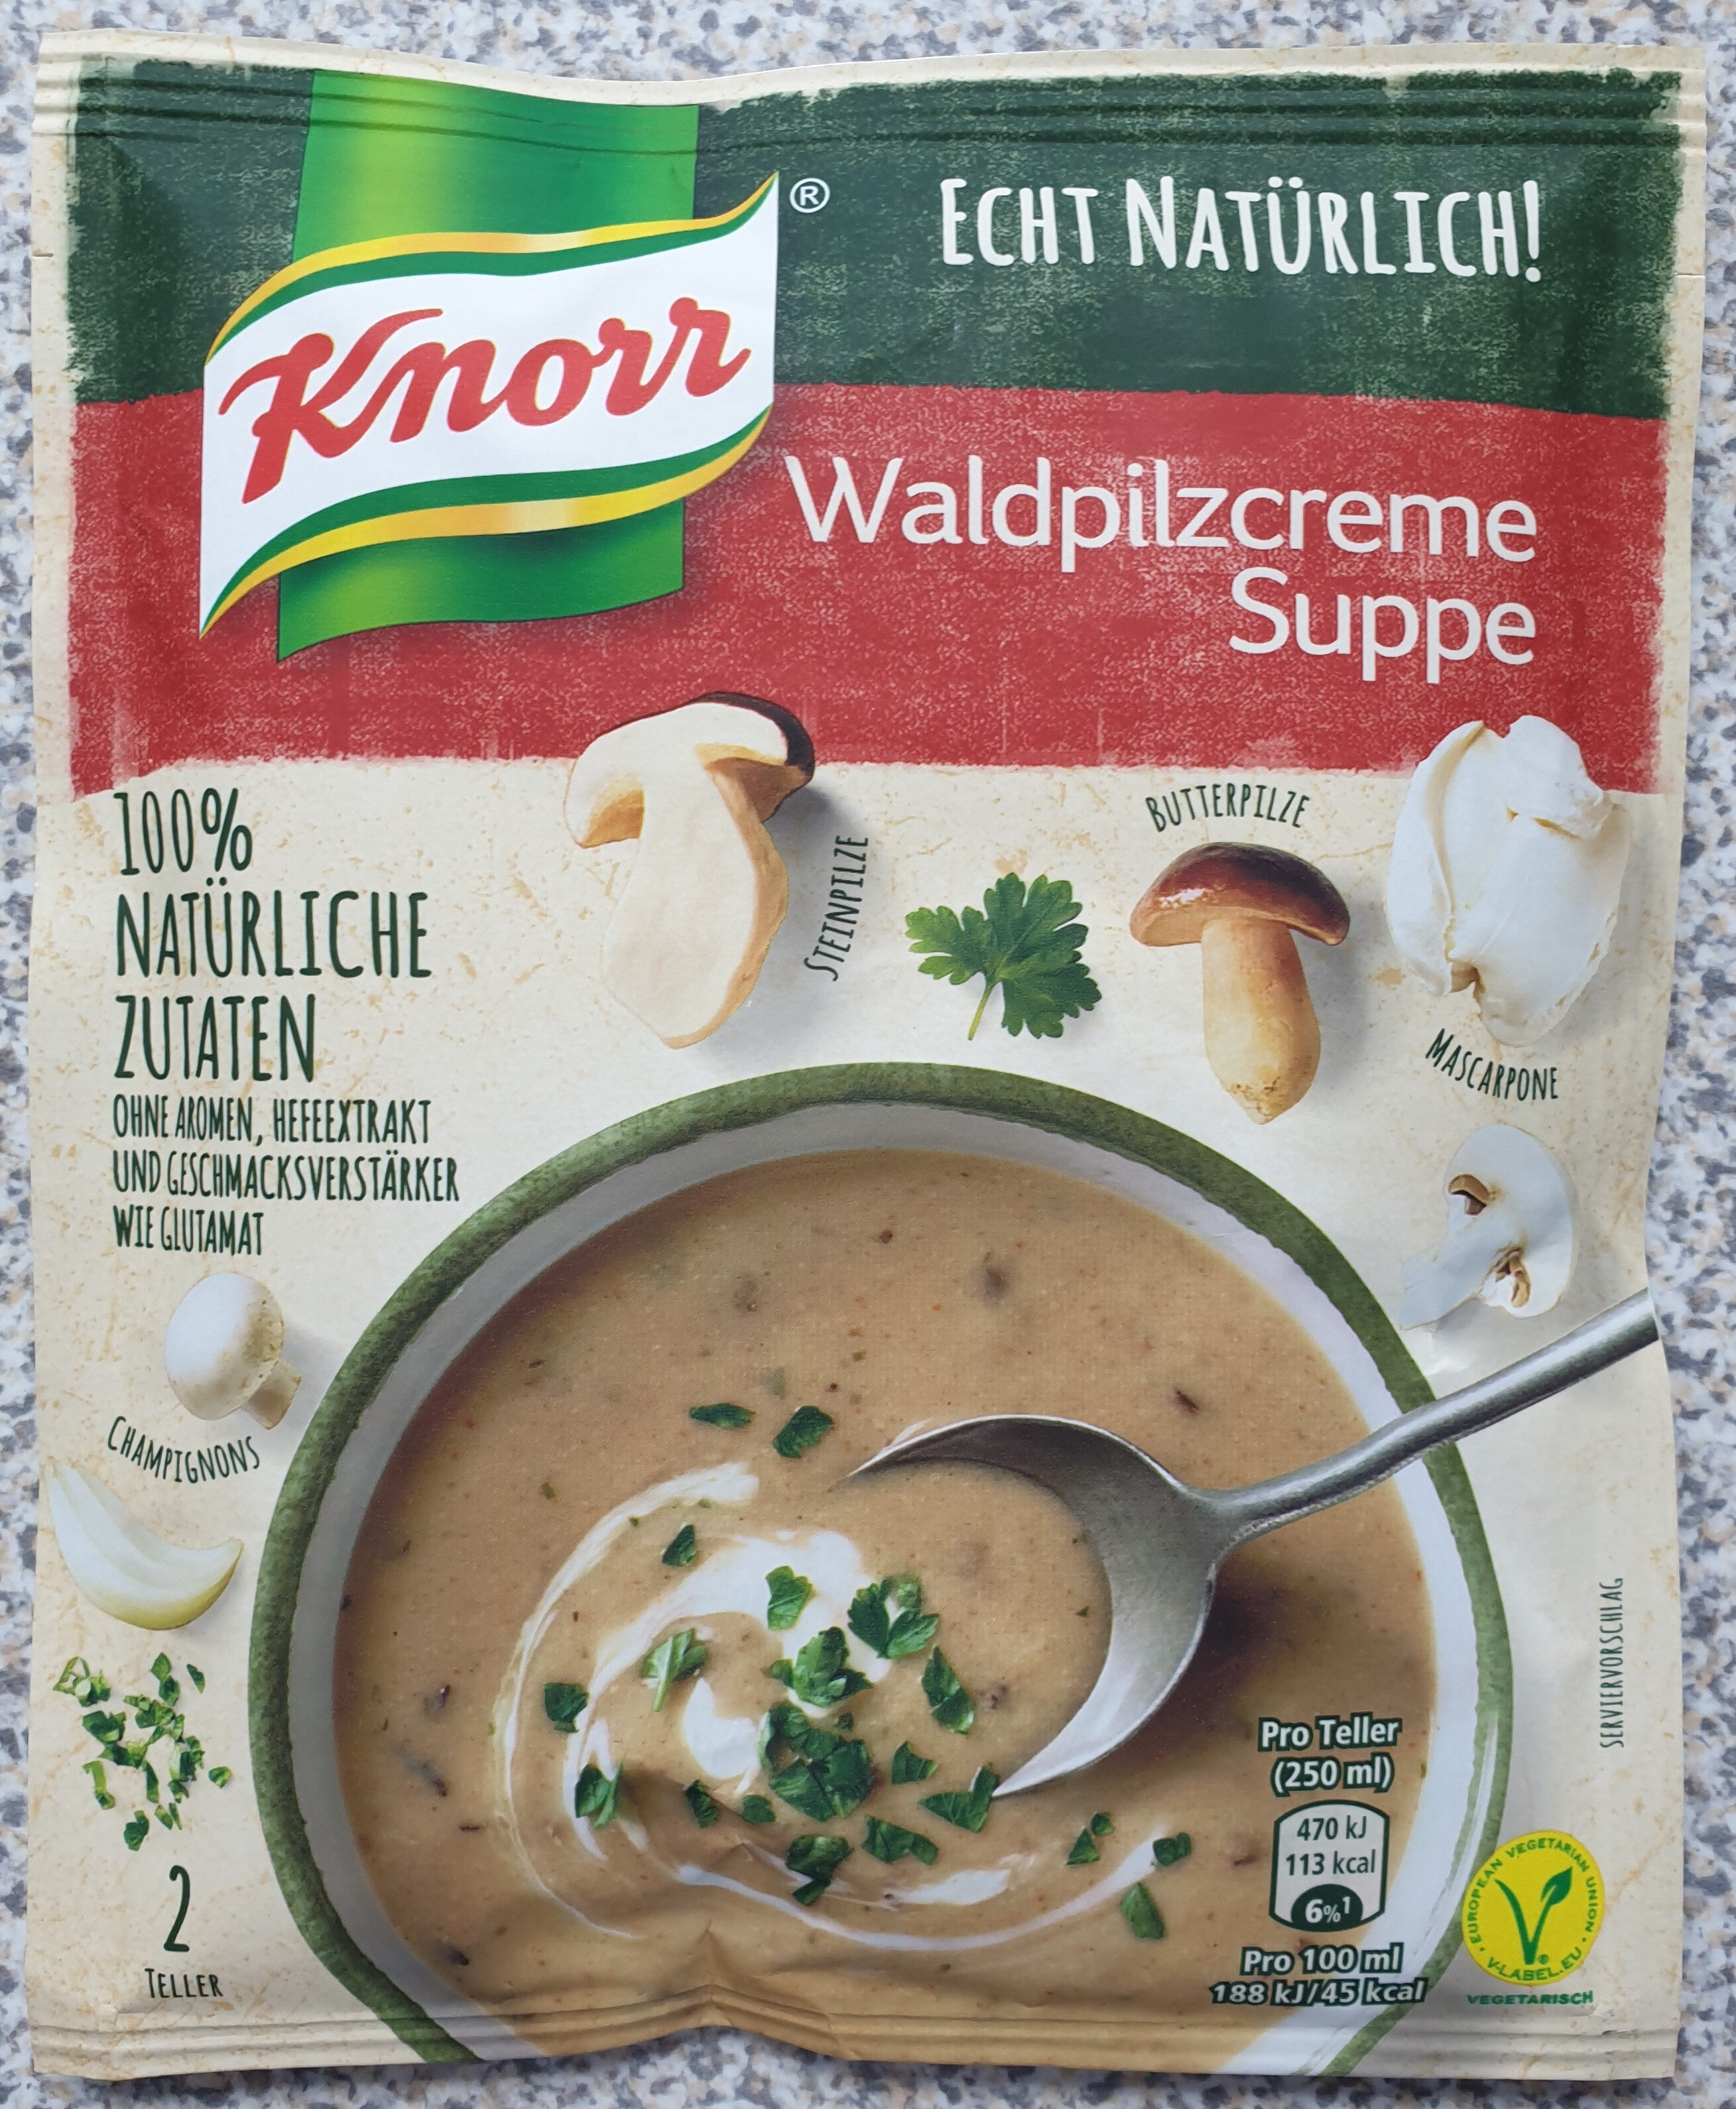 Echt Natürlich! Waldpilzcreme Suppe - Produkt